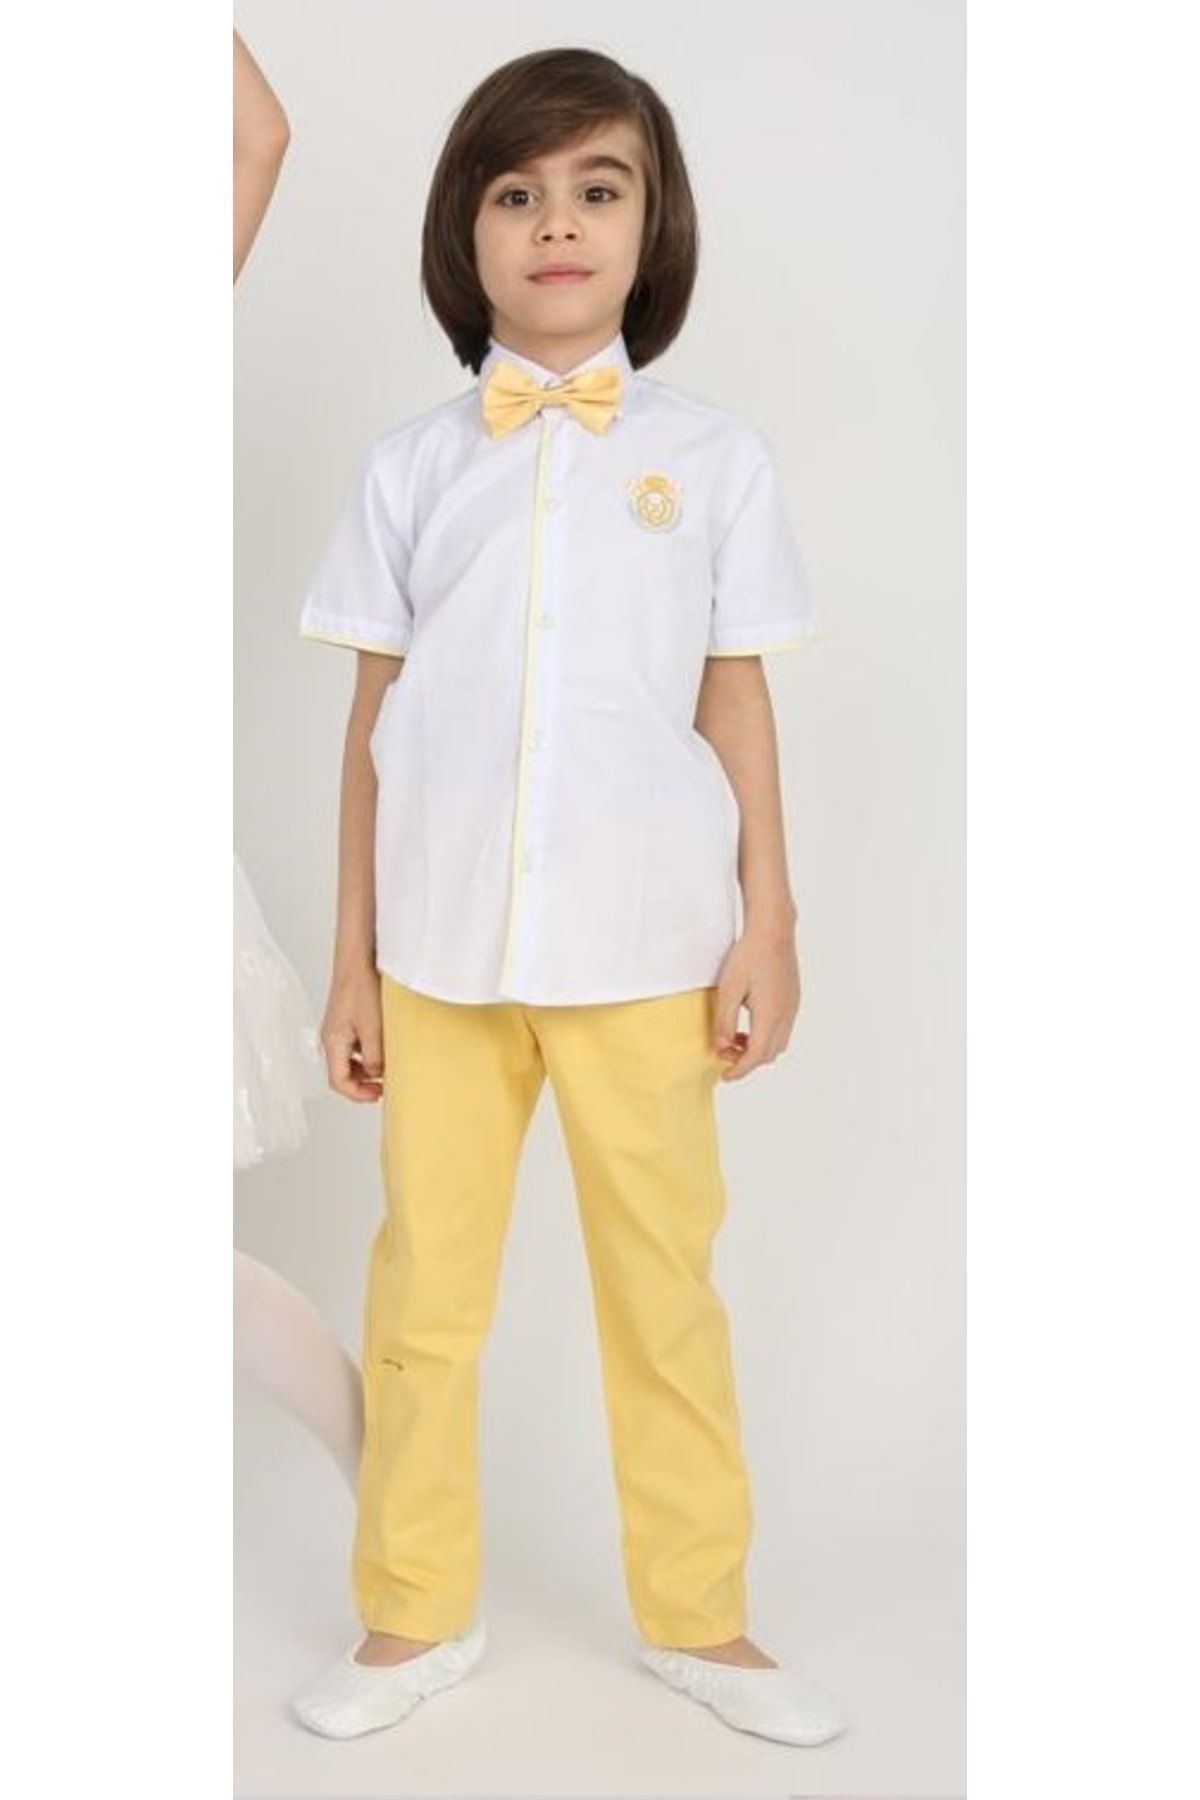 FATELLA Erkek Çocuk Kısa Kol Keten Düz Renk Gömlek 23 Nisan 29 Ekim 19 Mayıs Gösteri Mezuniyet